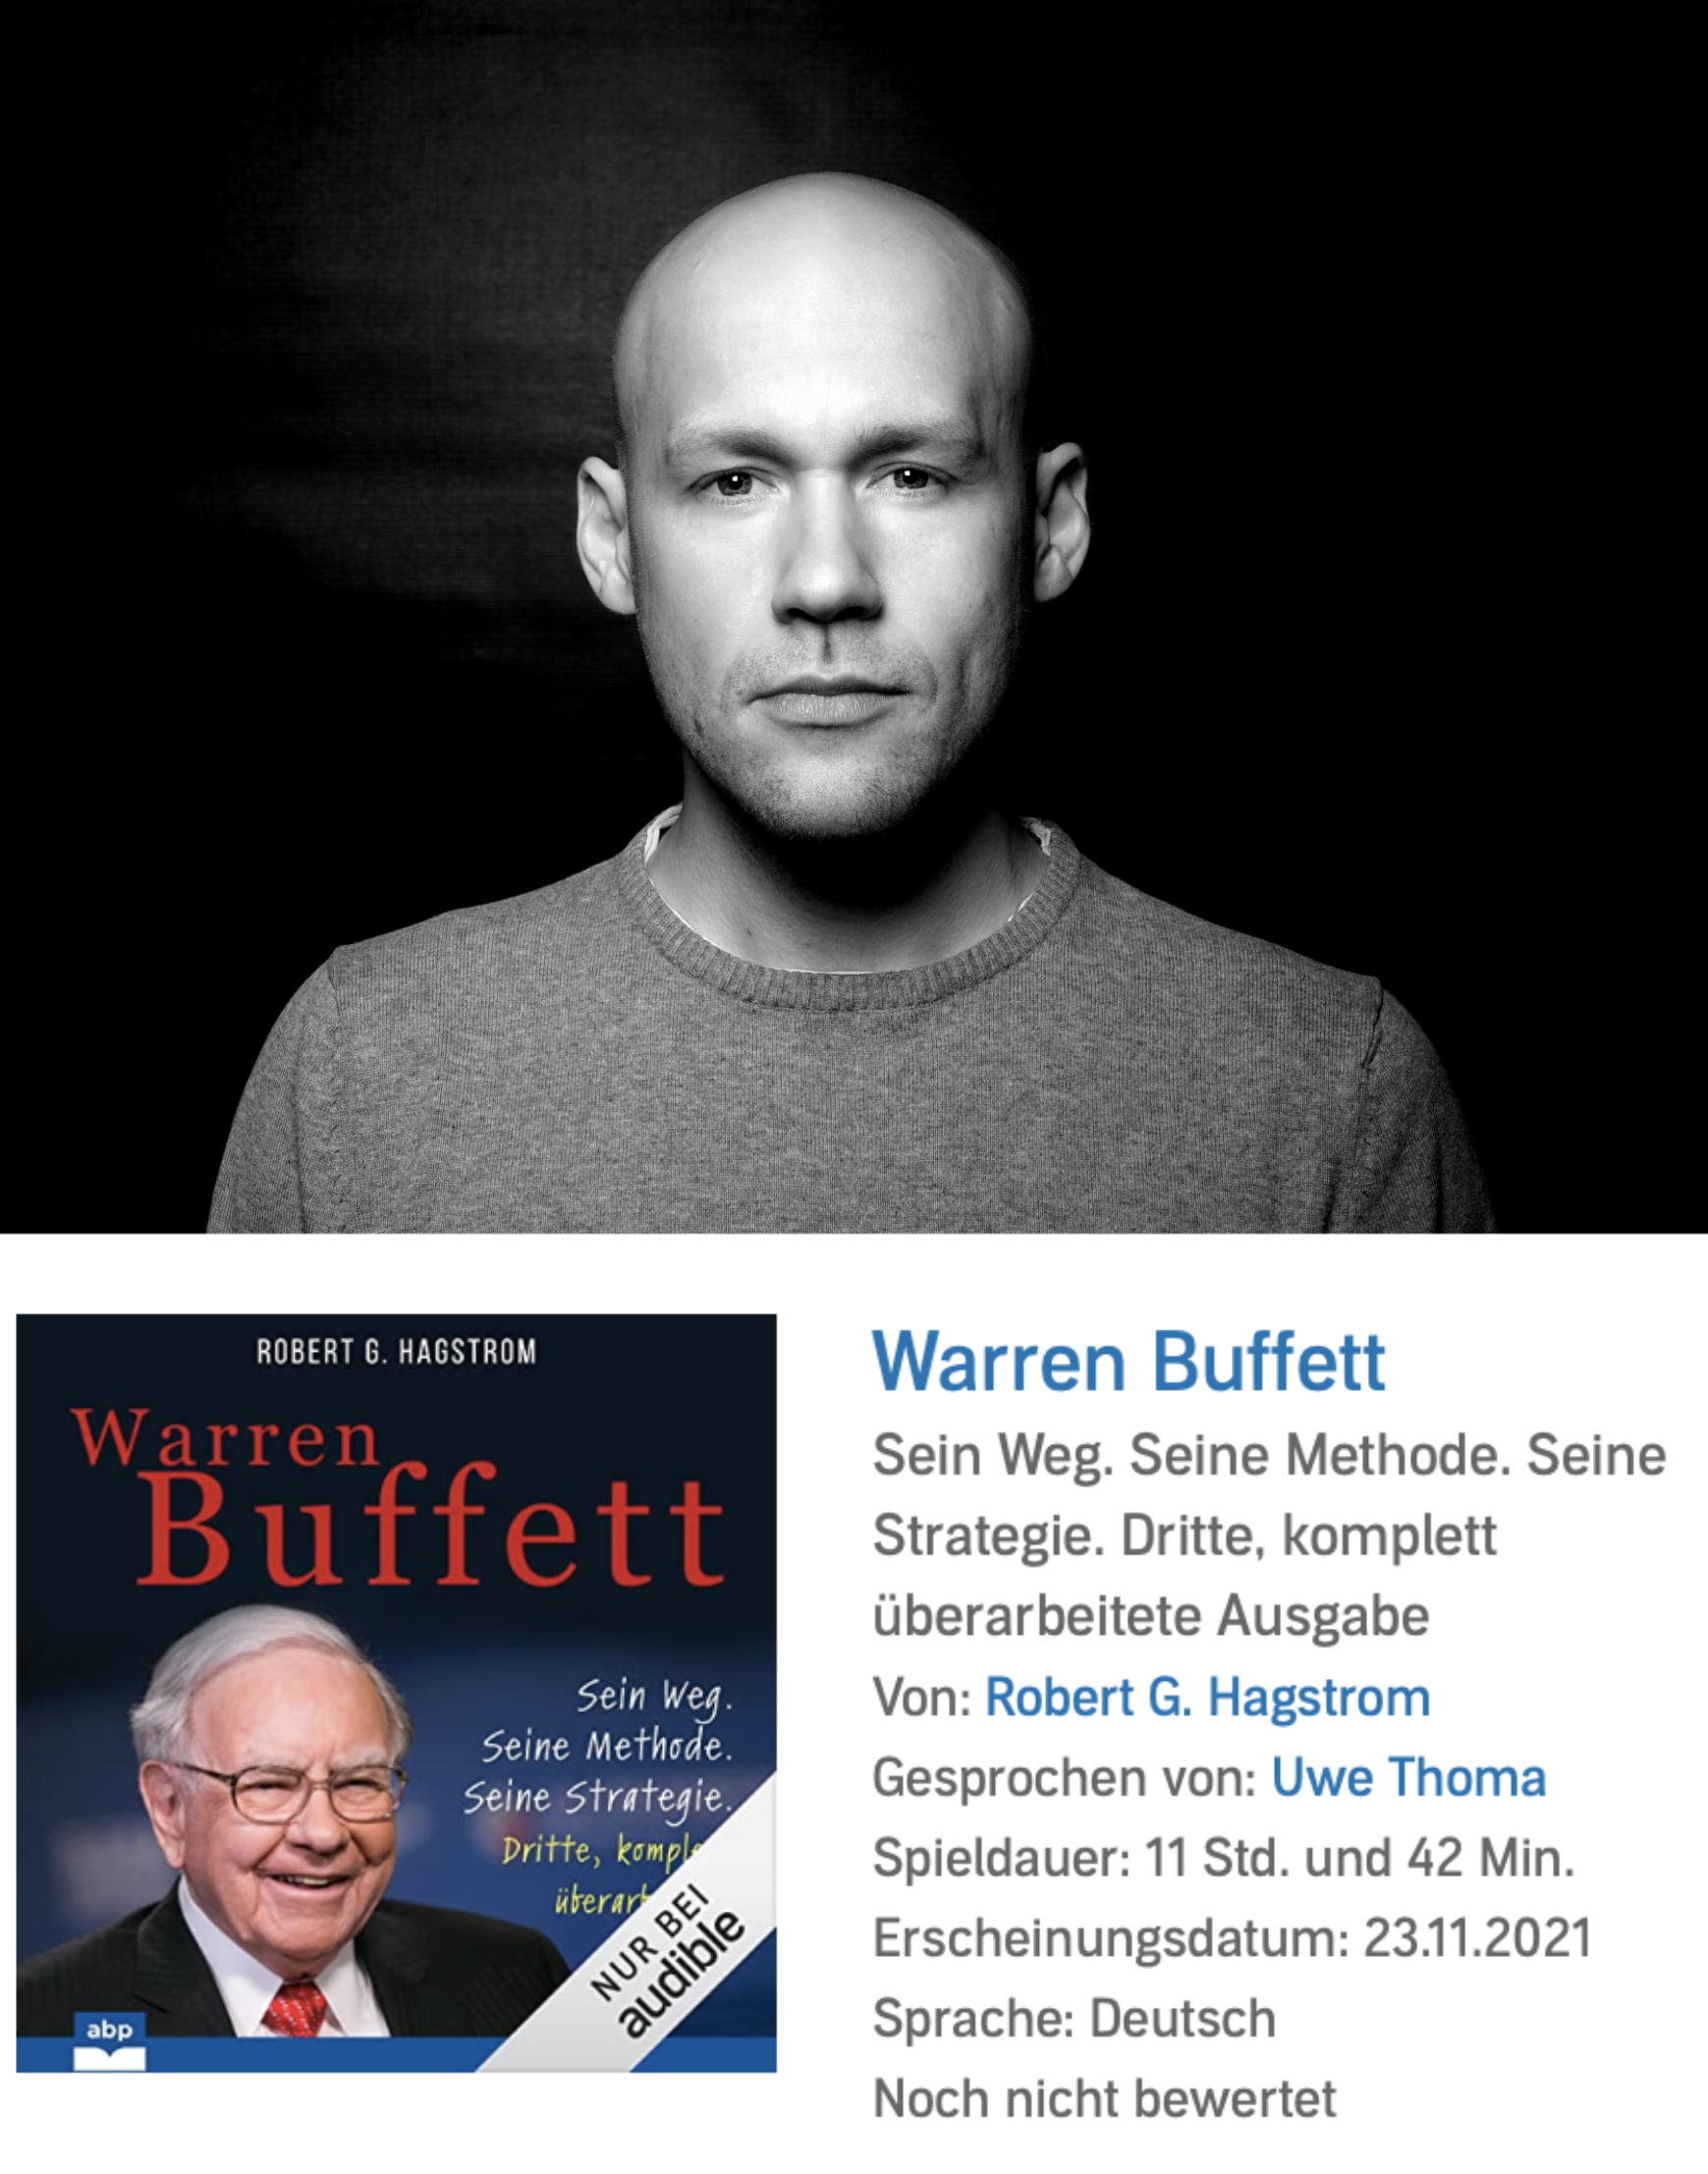 Hörbuchsprecher Uwe Thoma spricht Warren Buffet